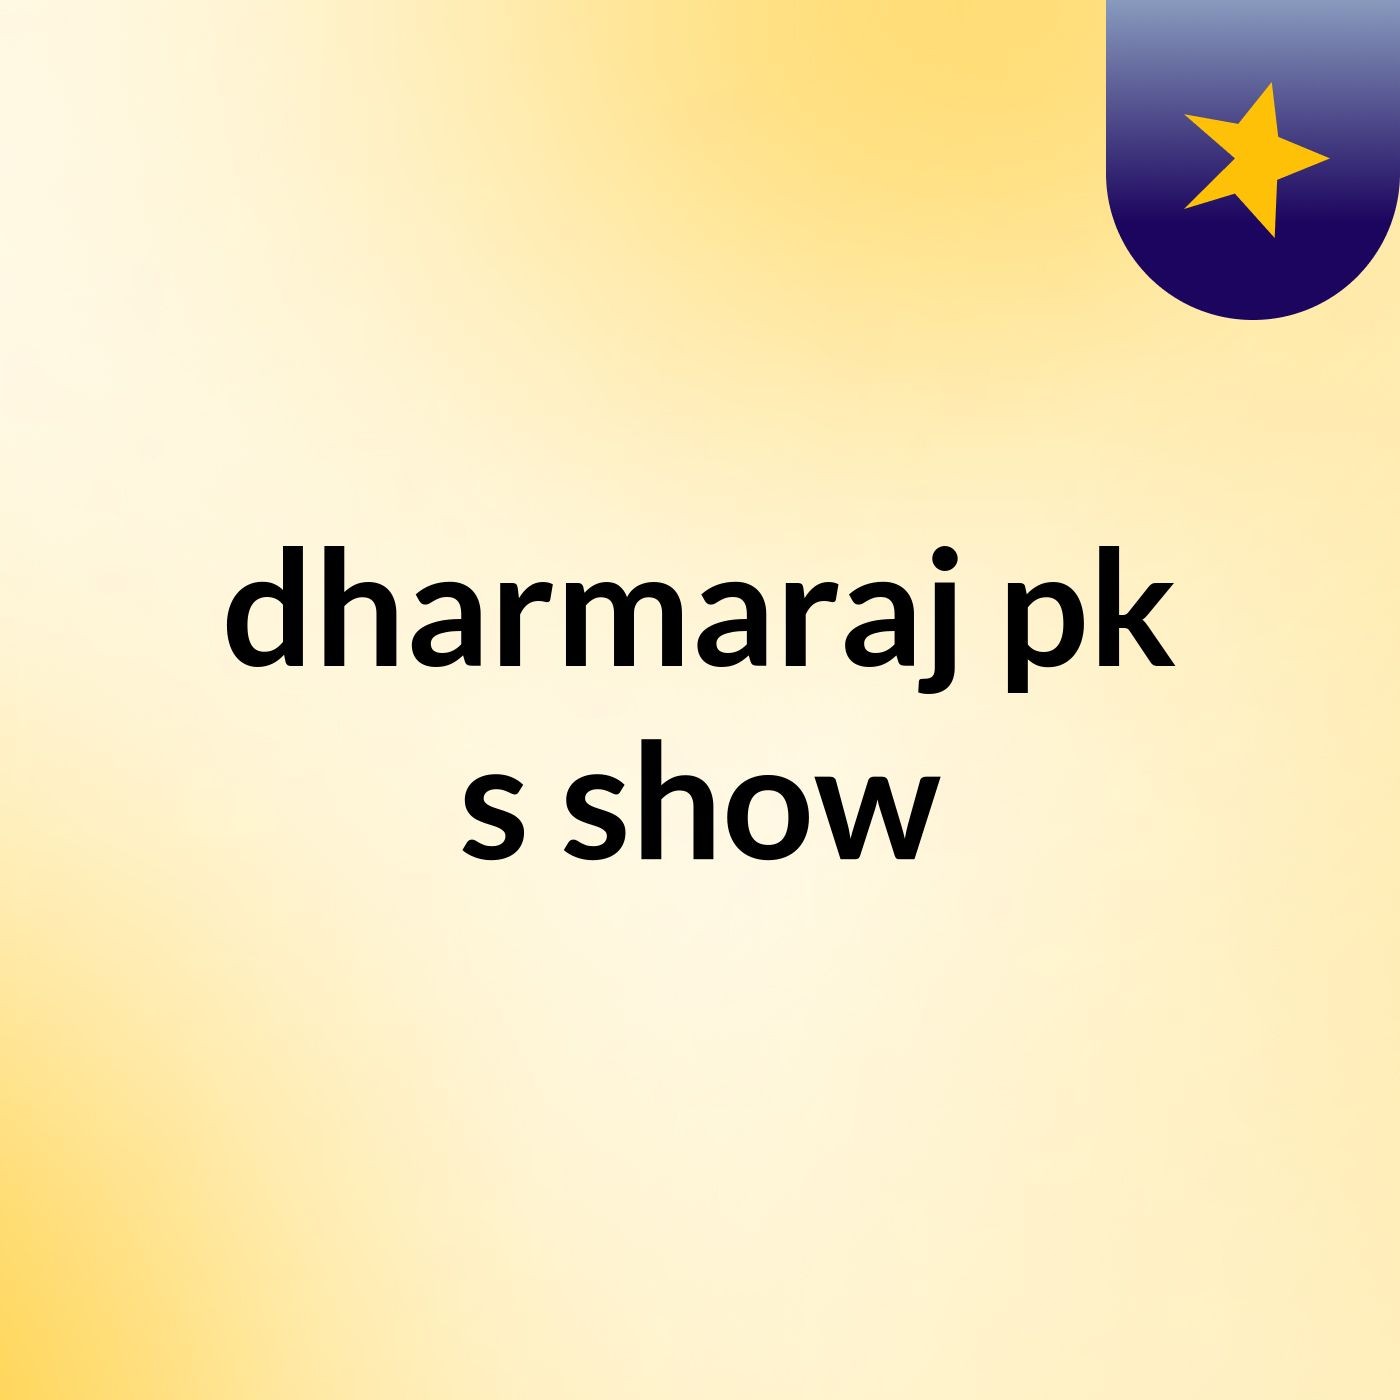 dharmaraj pk's show